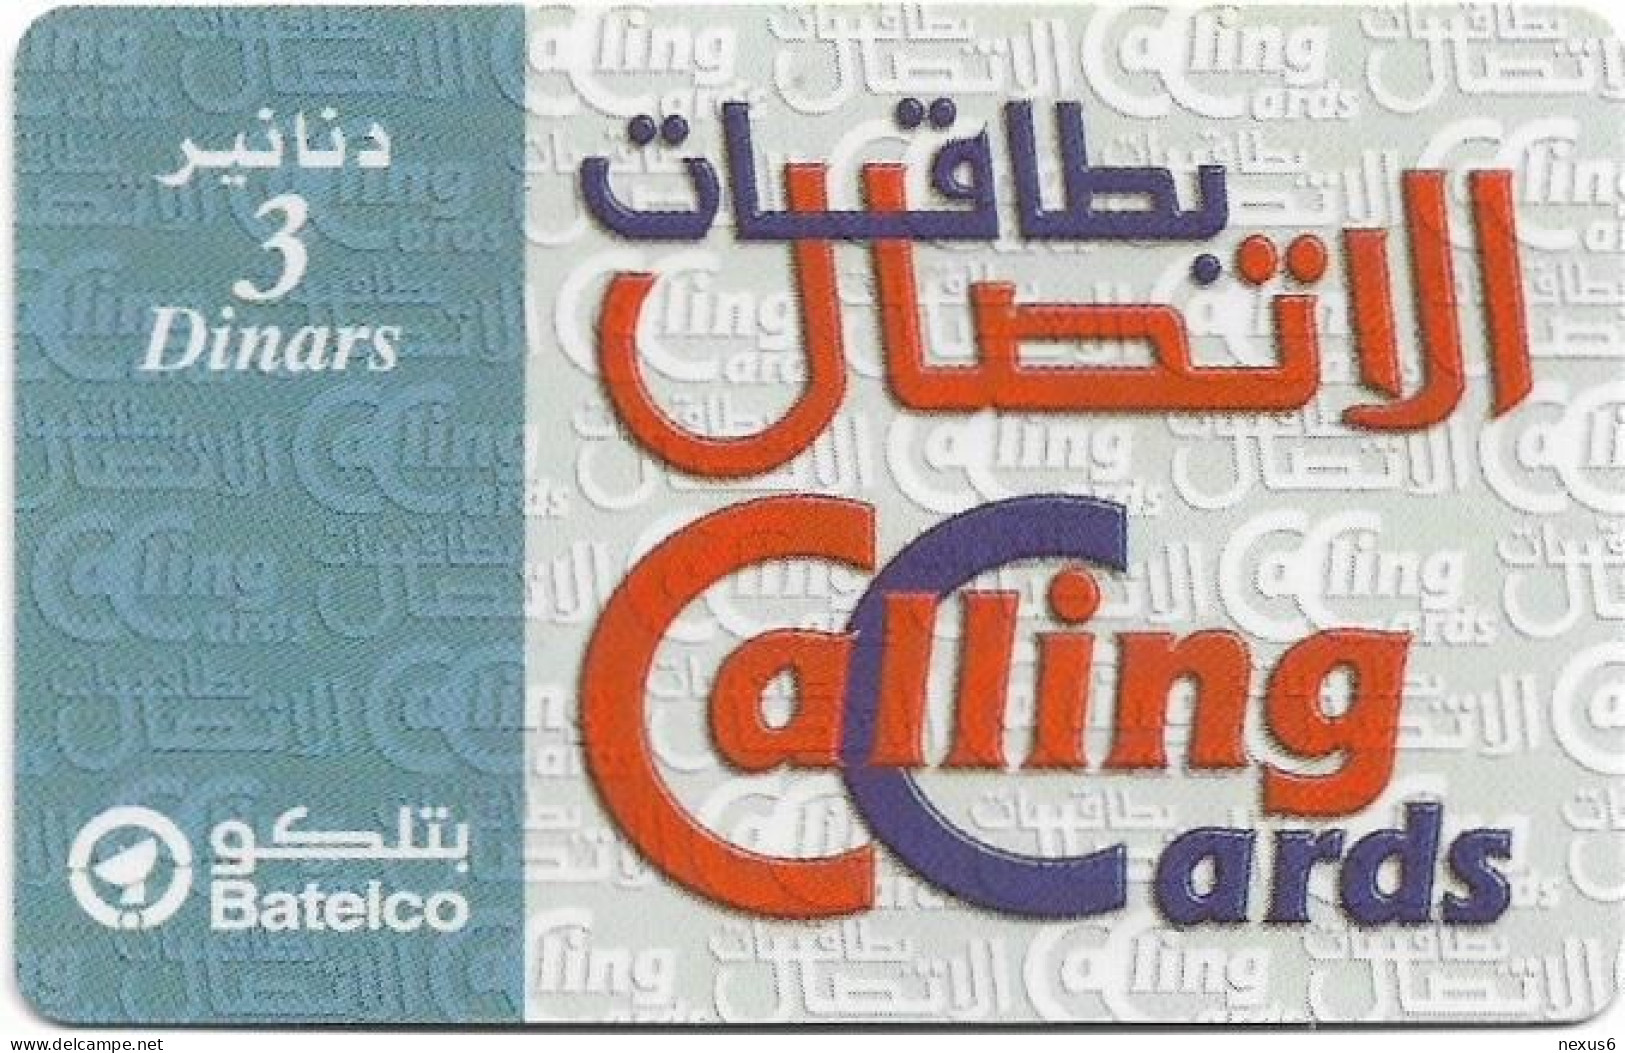 Bahrain - Batelco - Calling Cards (Light Blue), 3BD Prepaid Card, Used - Bahrain